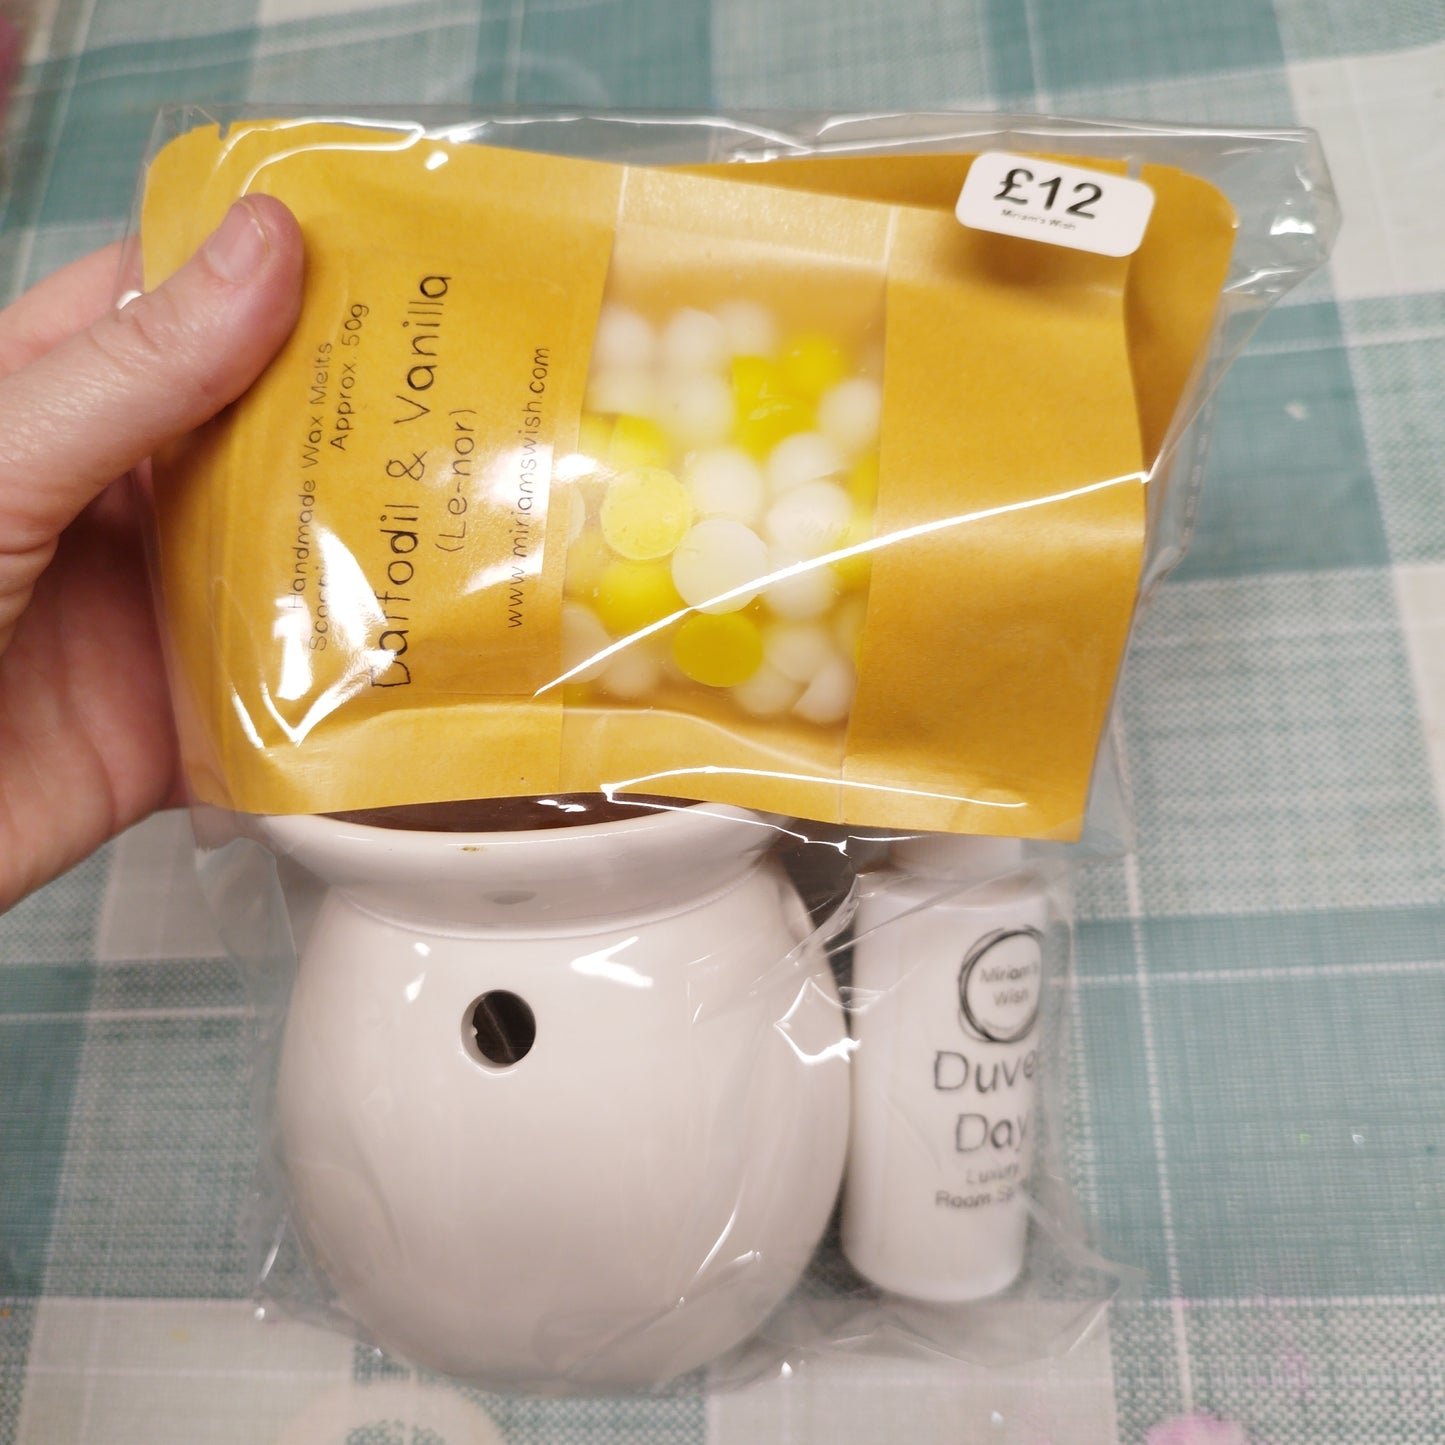 Tea light burner gift set